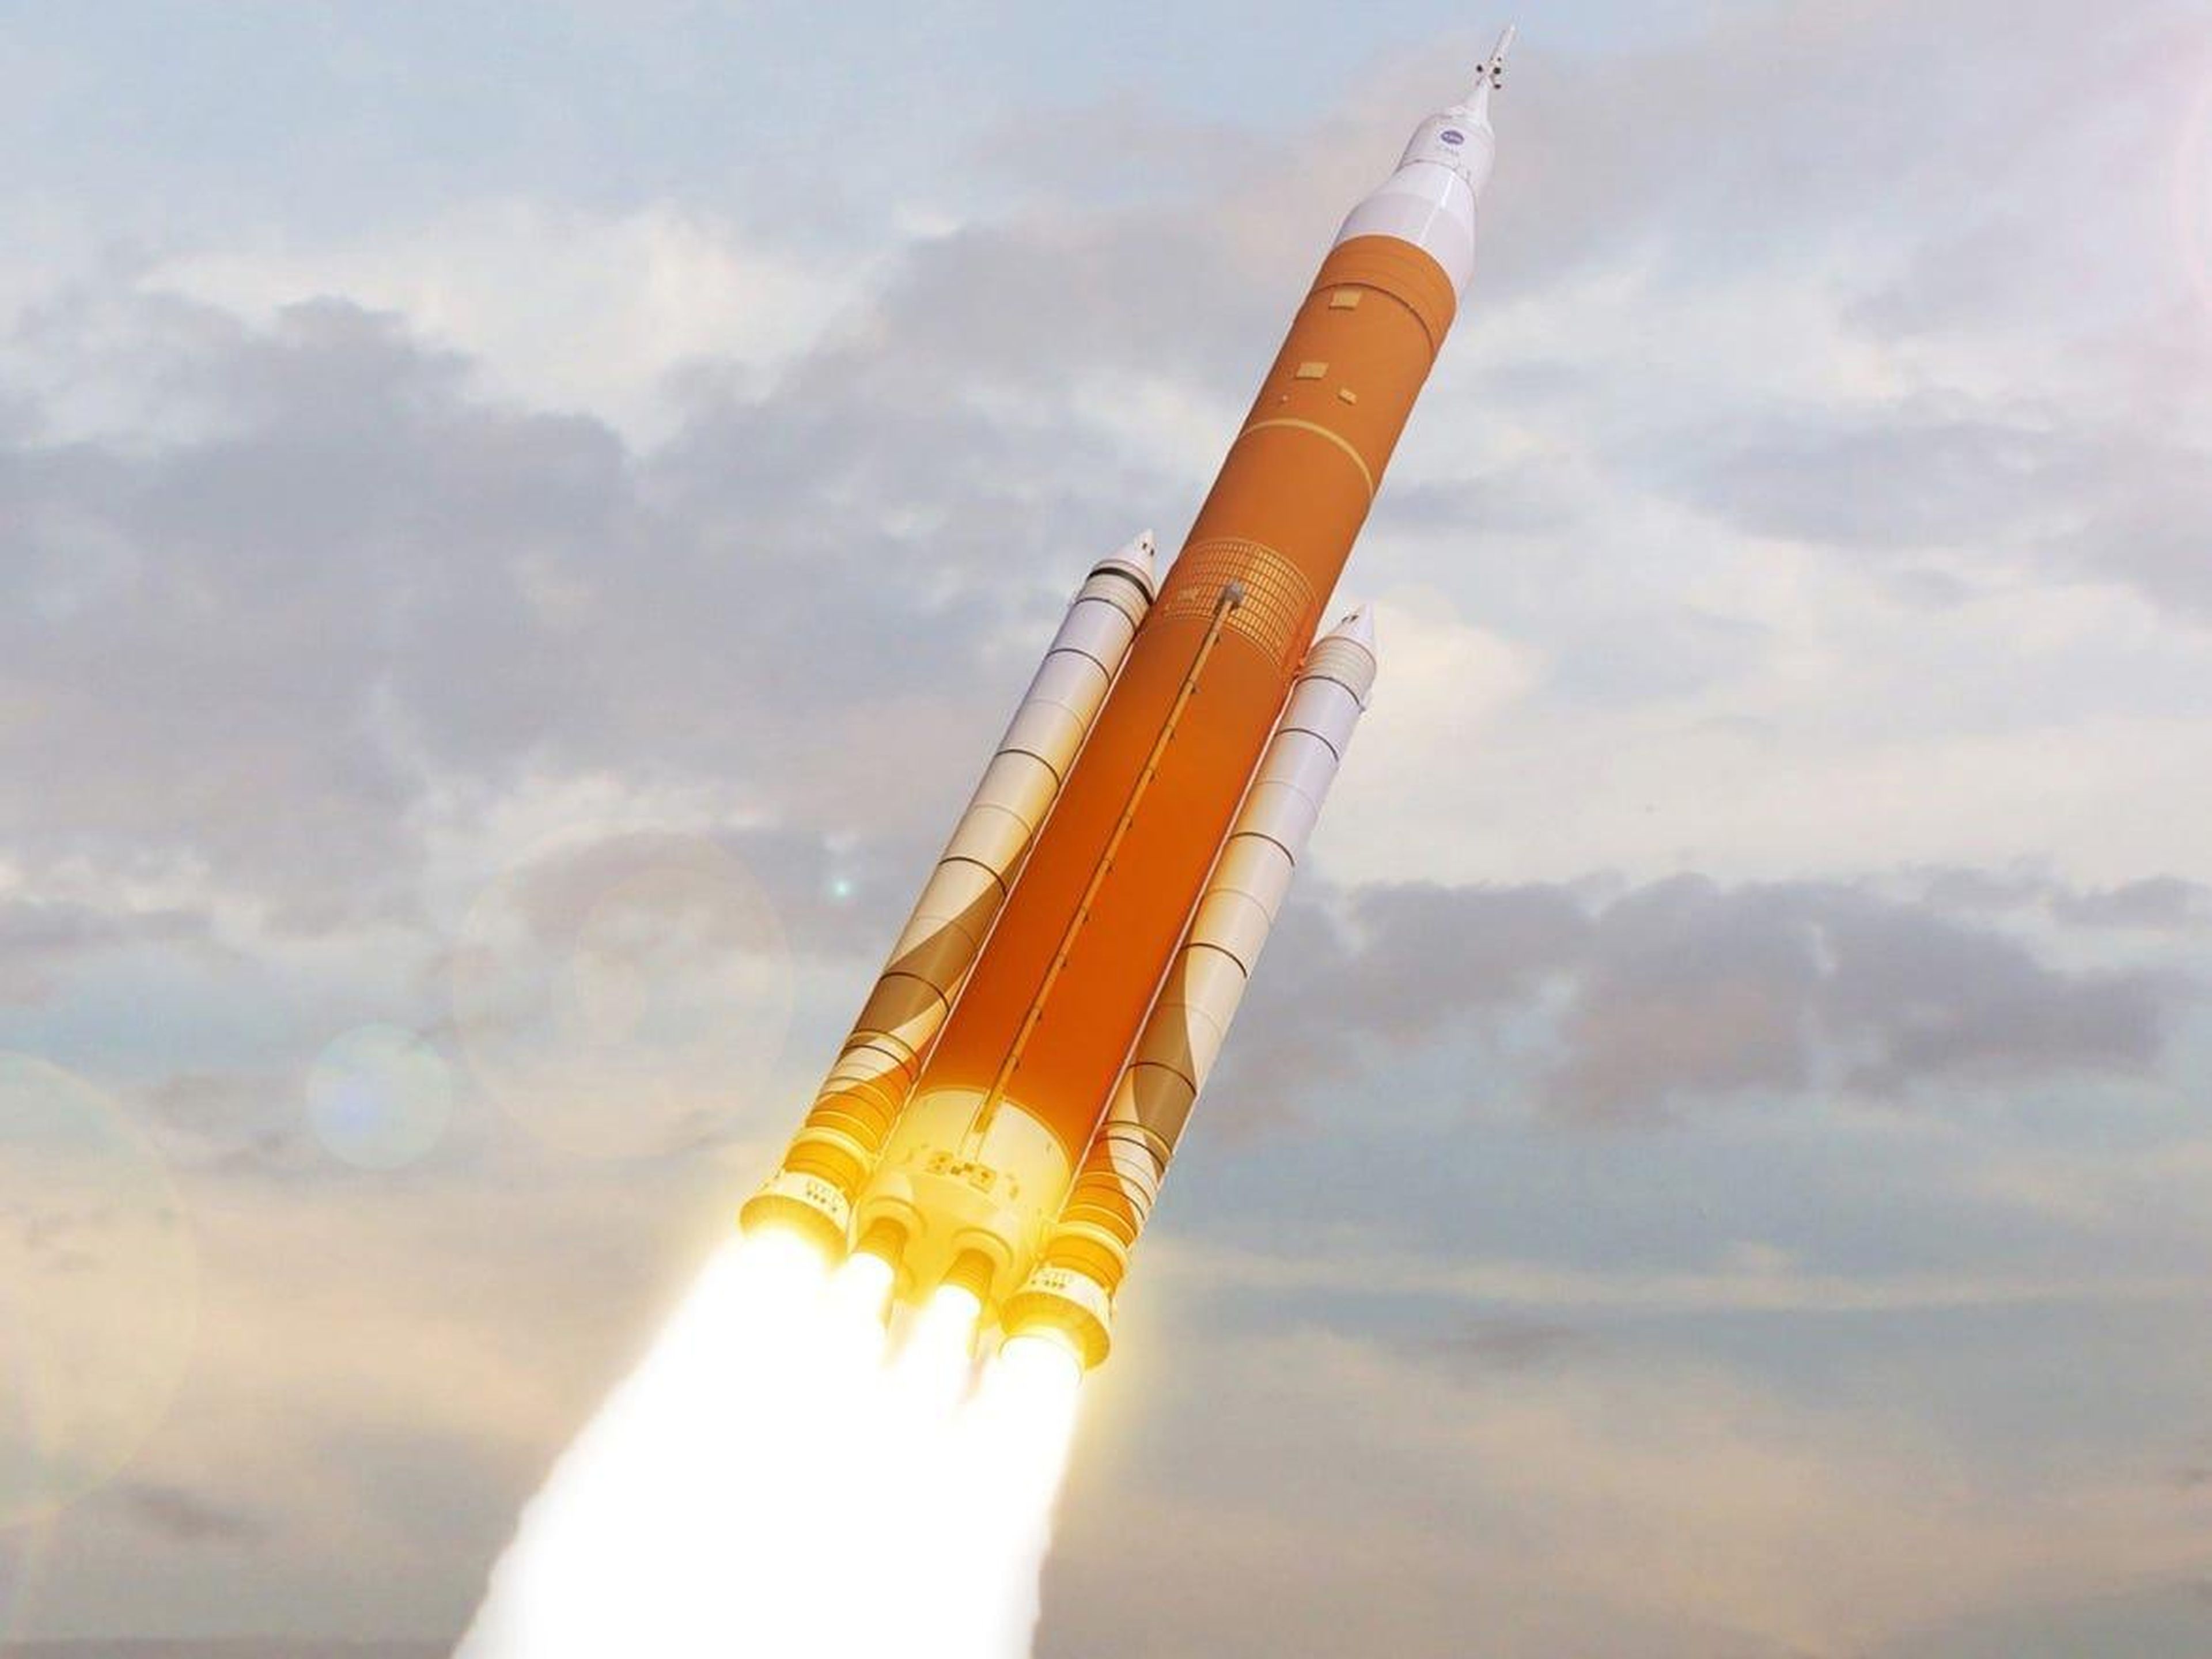 Una ilustración del Sistema de lanzamiento espacial de la NASA lanzándose hacia el espacio.